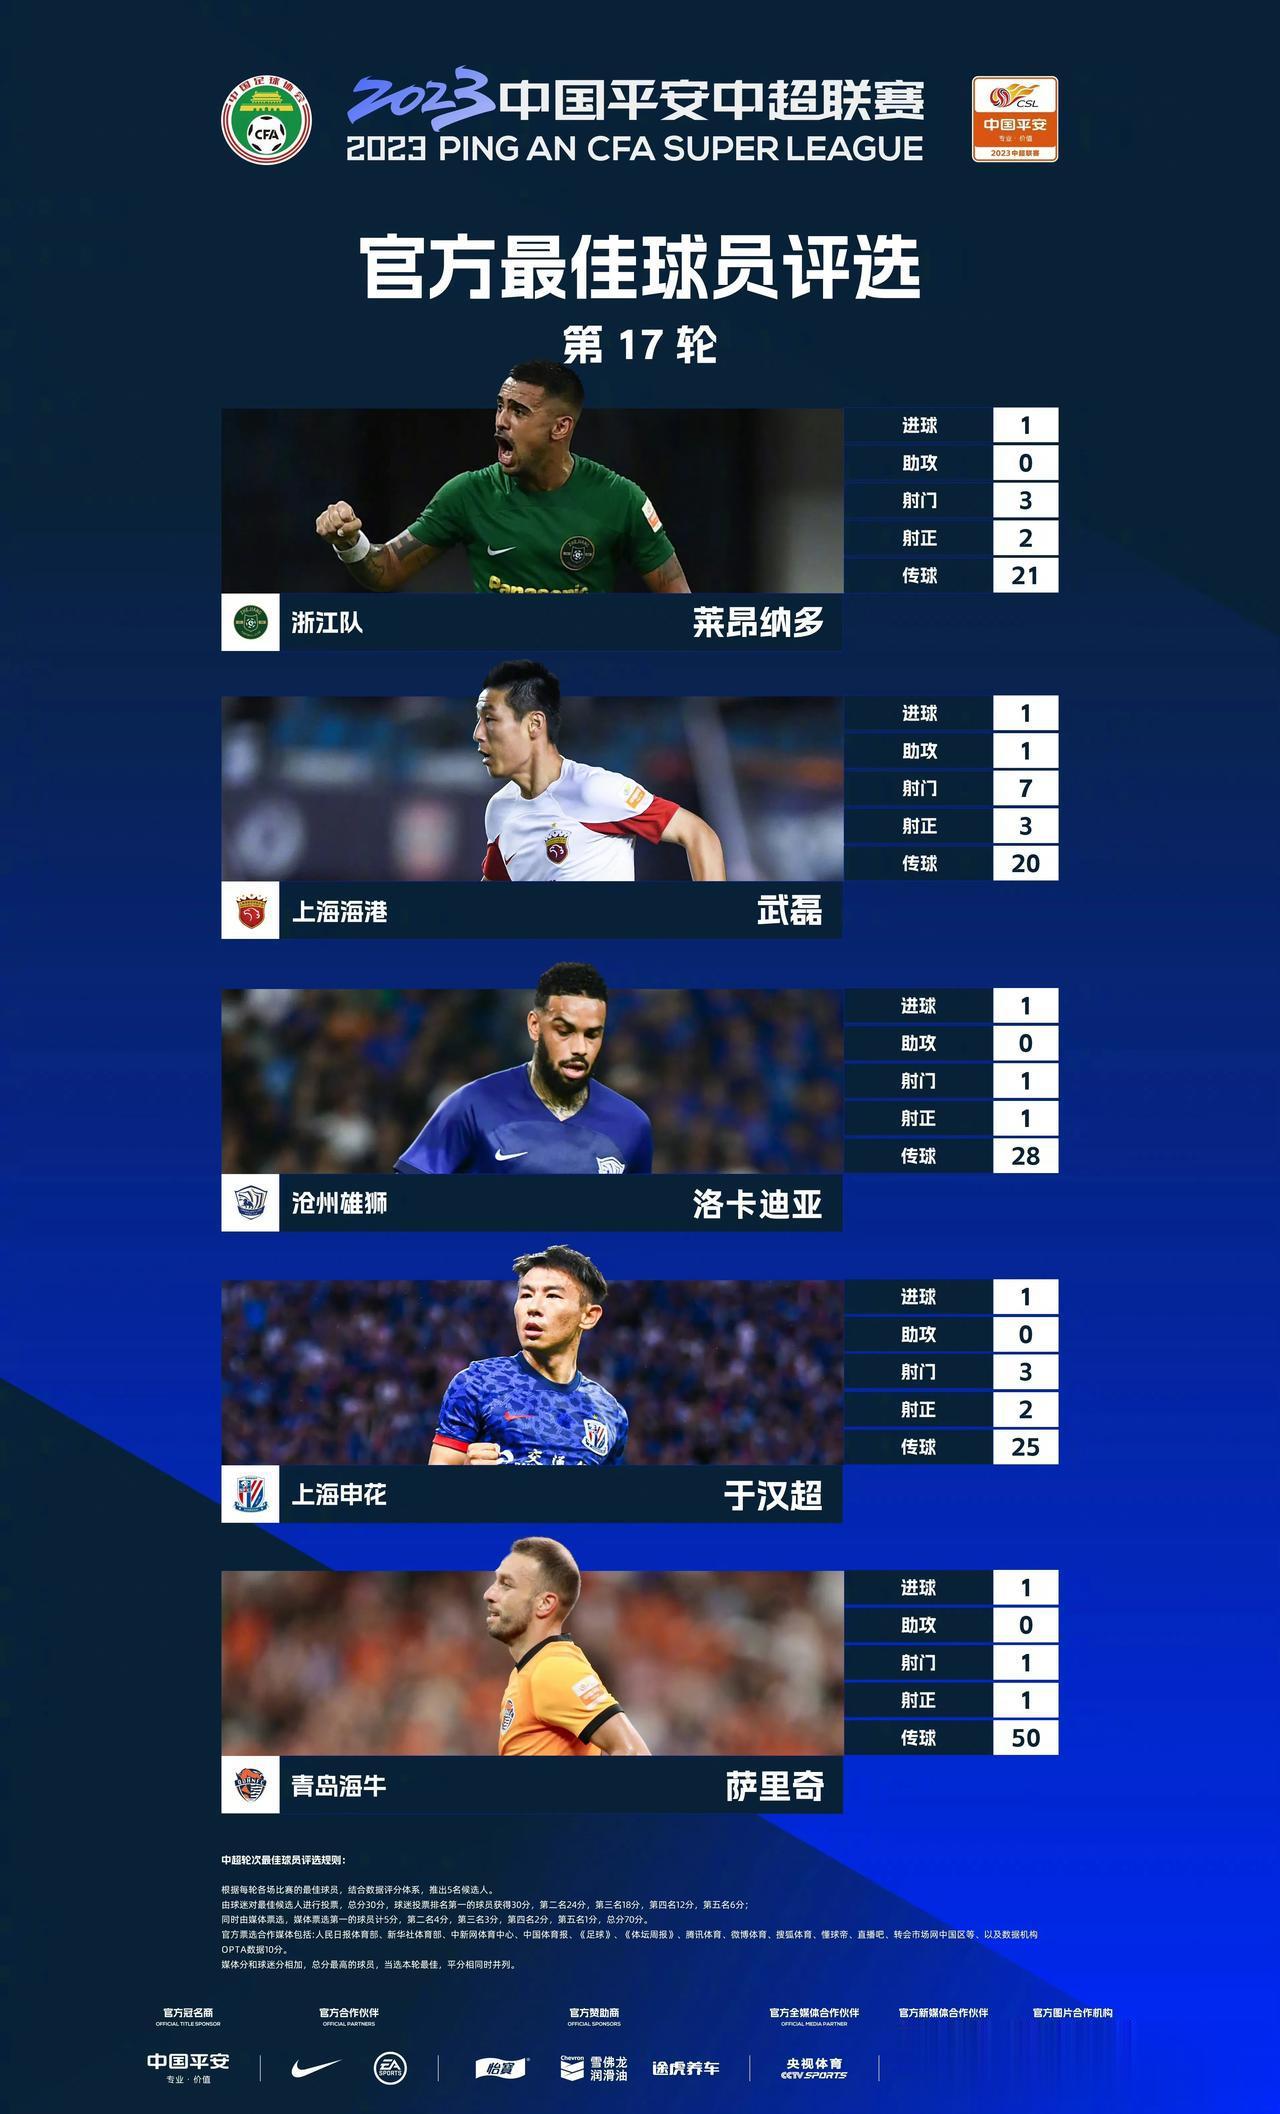  2023中国平安中超联赛第17轮官方最佳球员评选

入围本轮评选的五位球员是：(1)